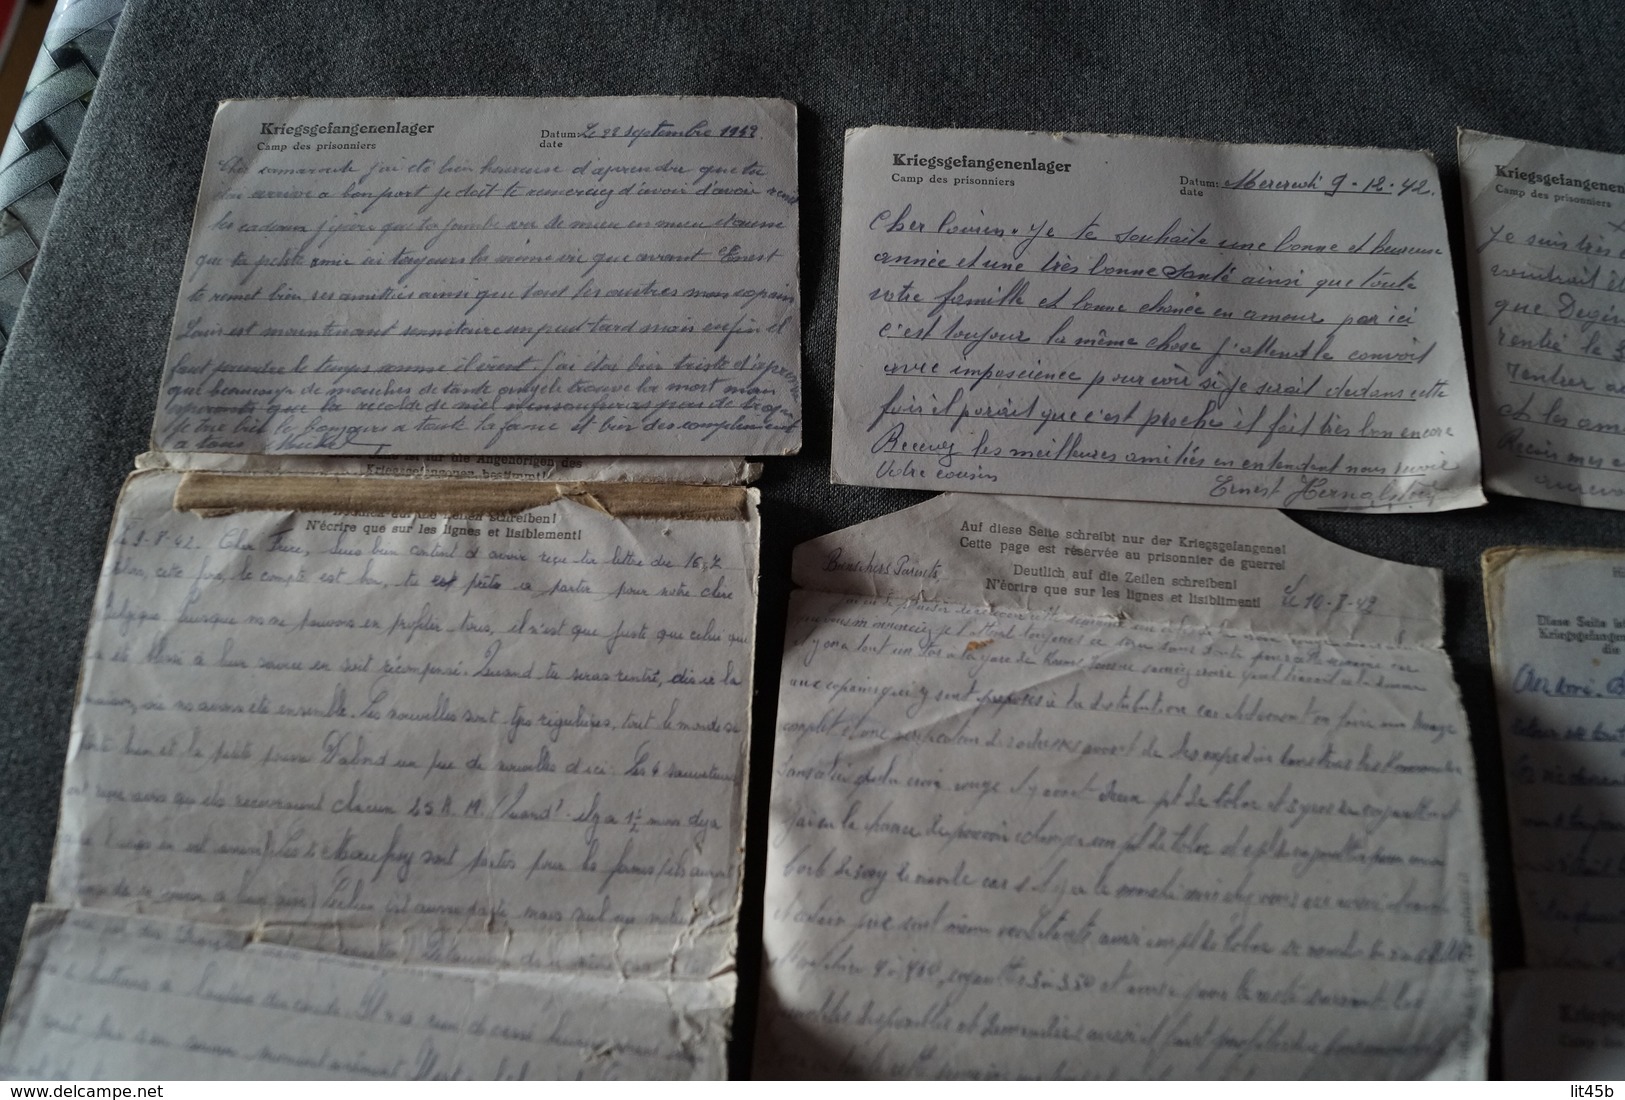 superbe lot de 11 courriers originaux du camp STALAG,Nicaise Maeck,prisonniers en Allemagne